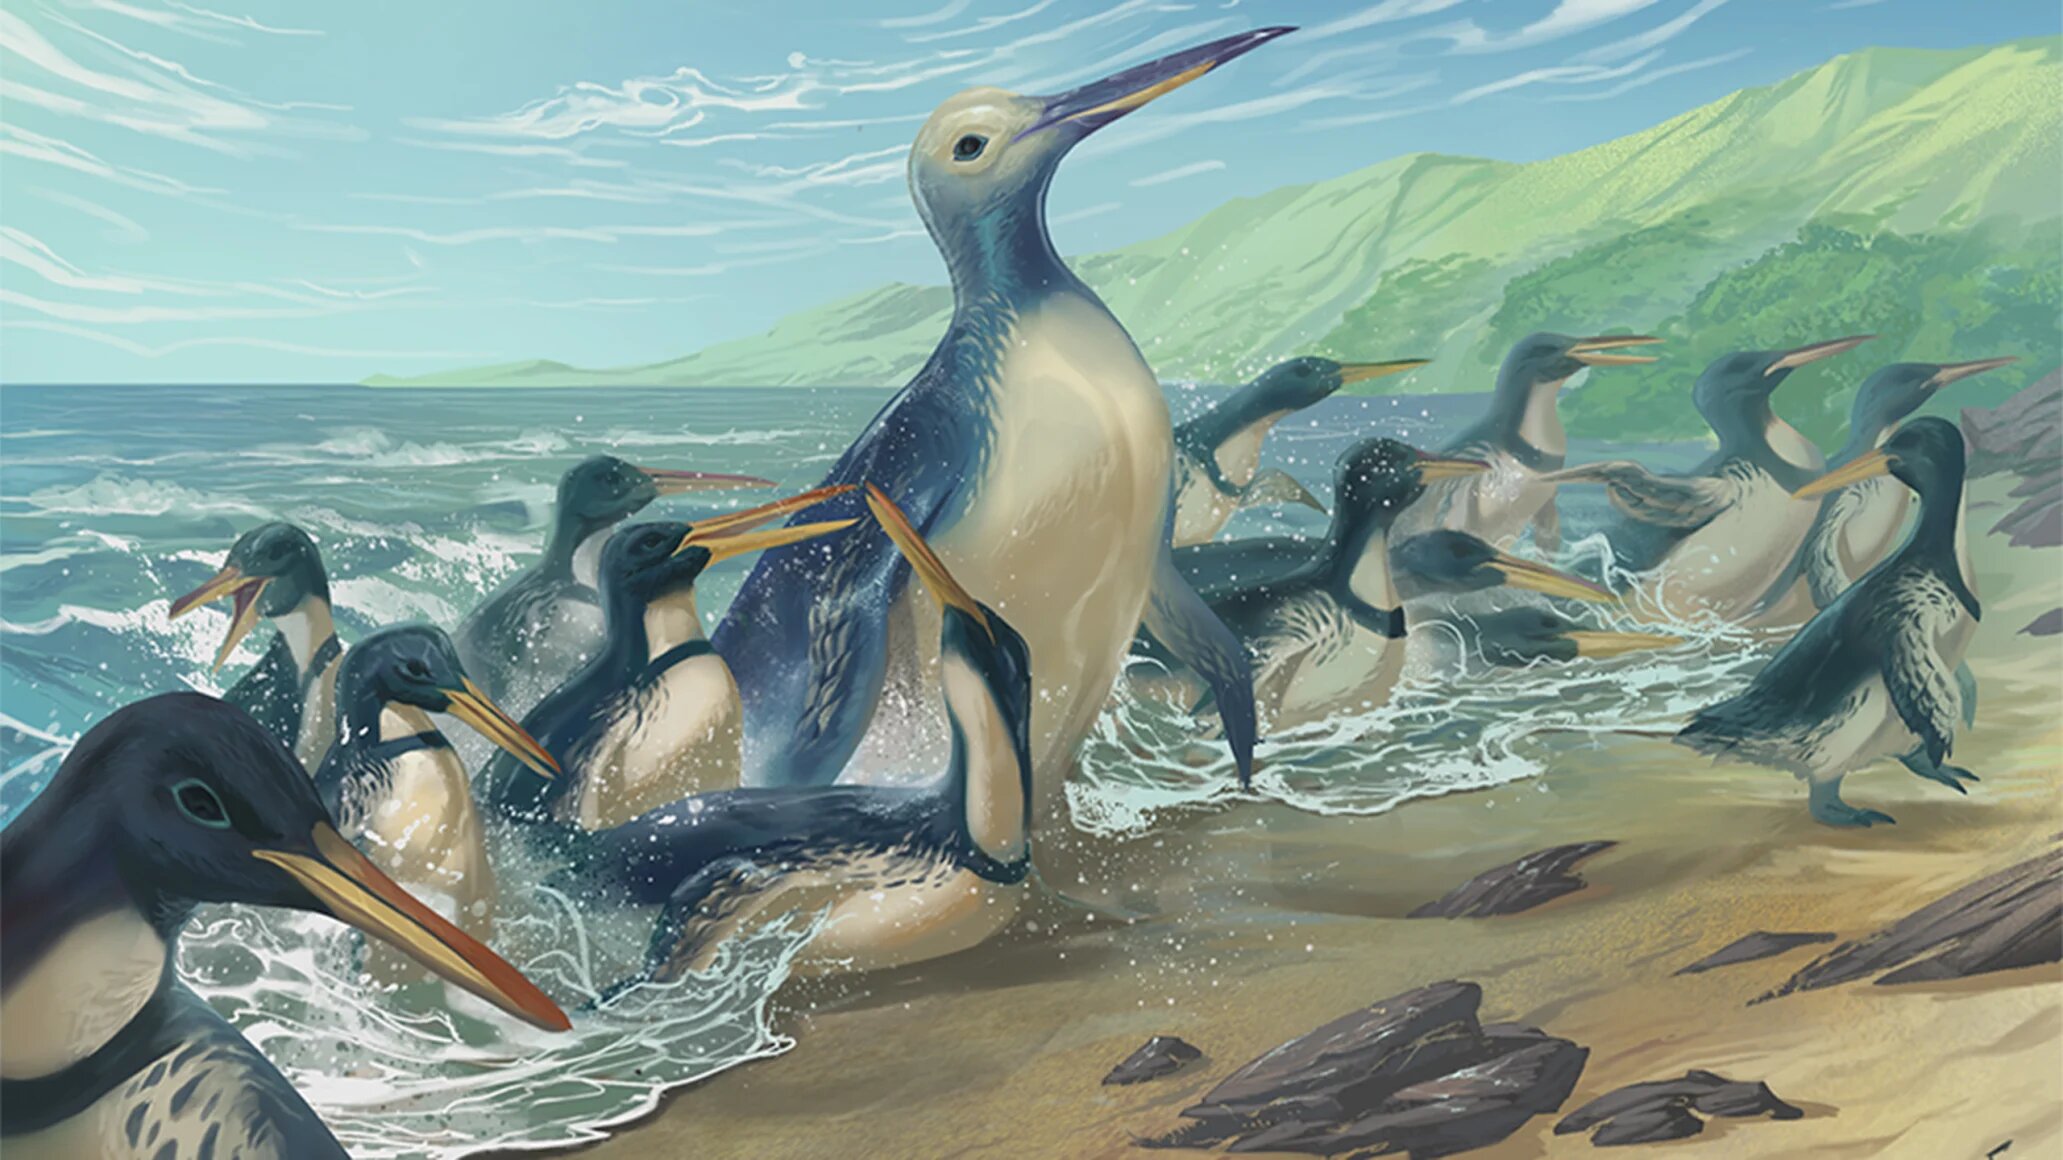 新西兰出土有史以来最大的企鹅化石 体重超过150公斤